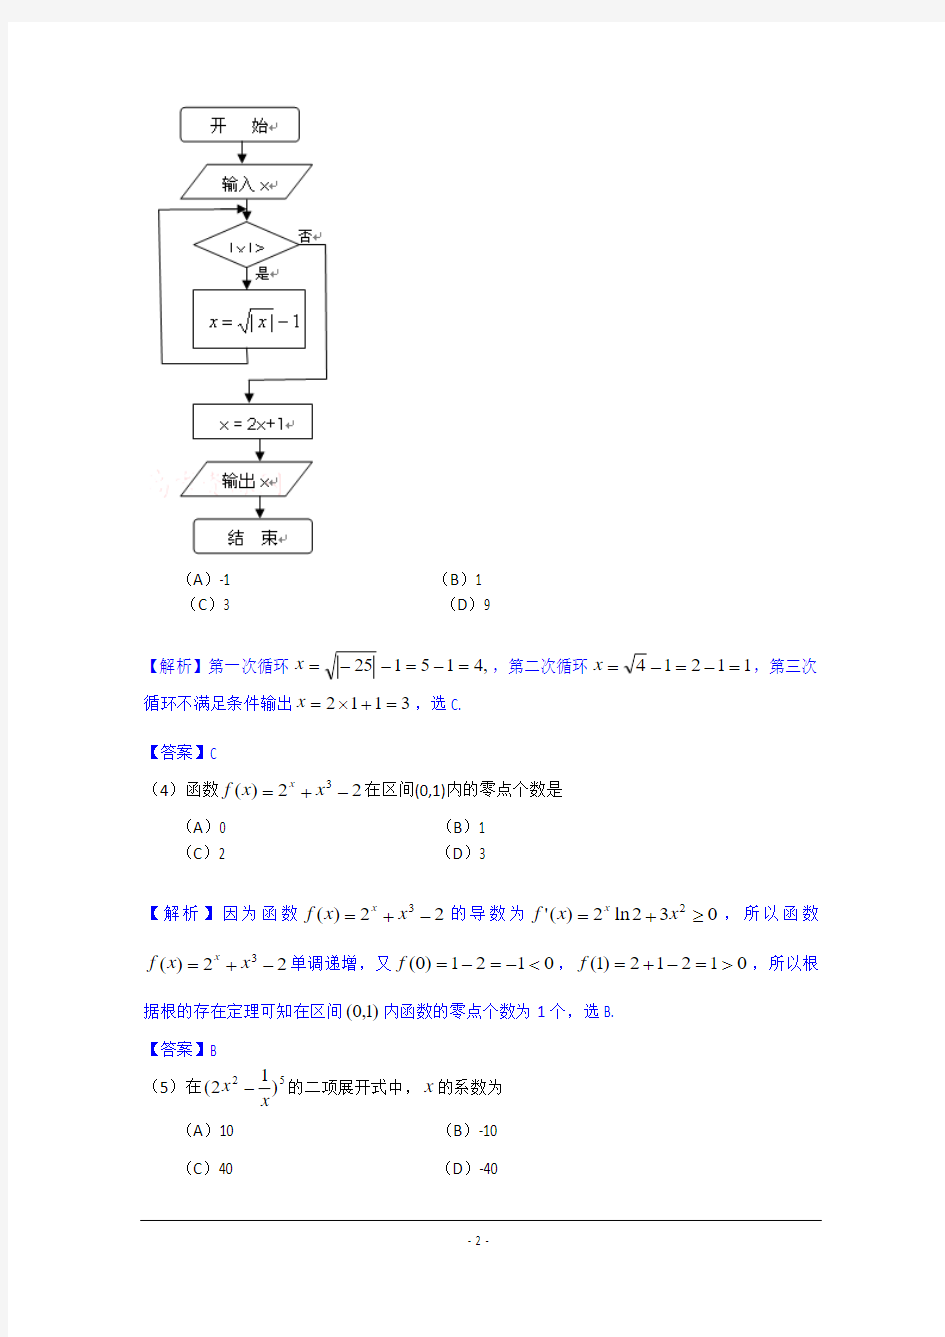 2012年高考真题——理科数学(天津卷)解析版(1)